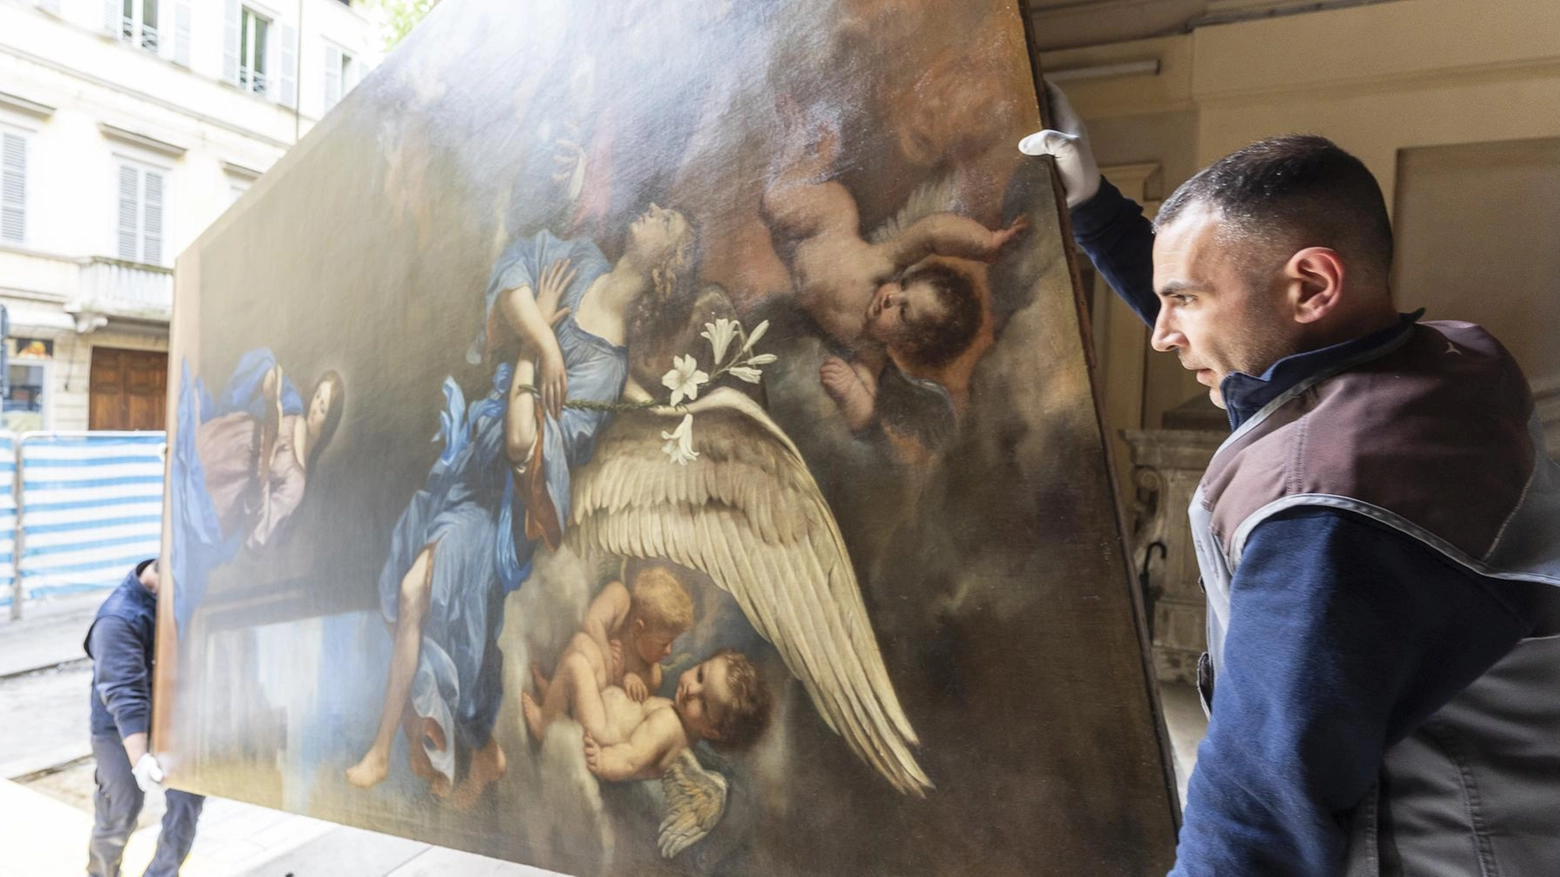 Il restauro di palazzo Merenda, con lo svuotamento dei locali, ha favorito il prestito dei prestigiosi quadri